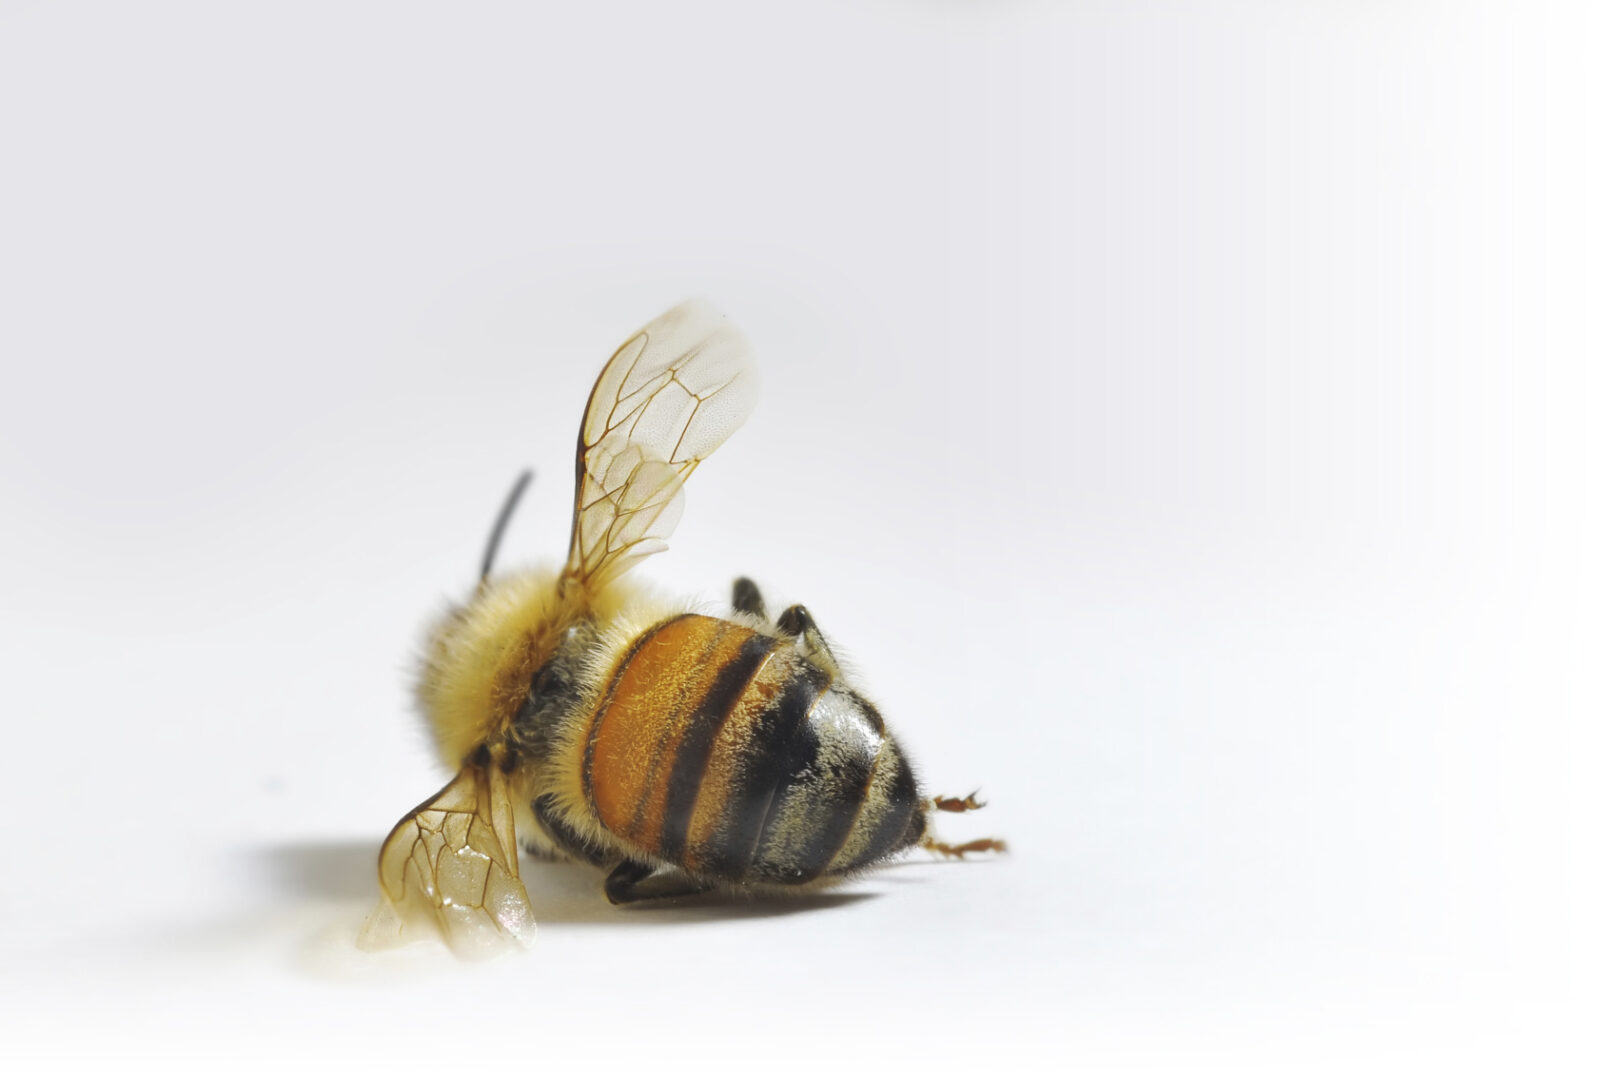 Exterminaron 46 colmenas de abejas al fumigar un campo cerca de